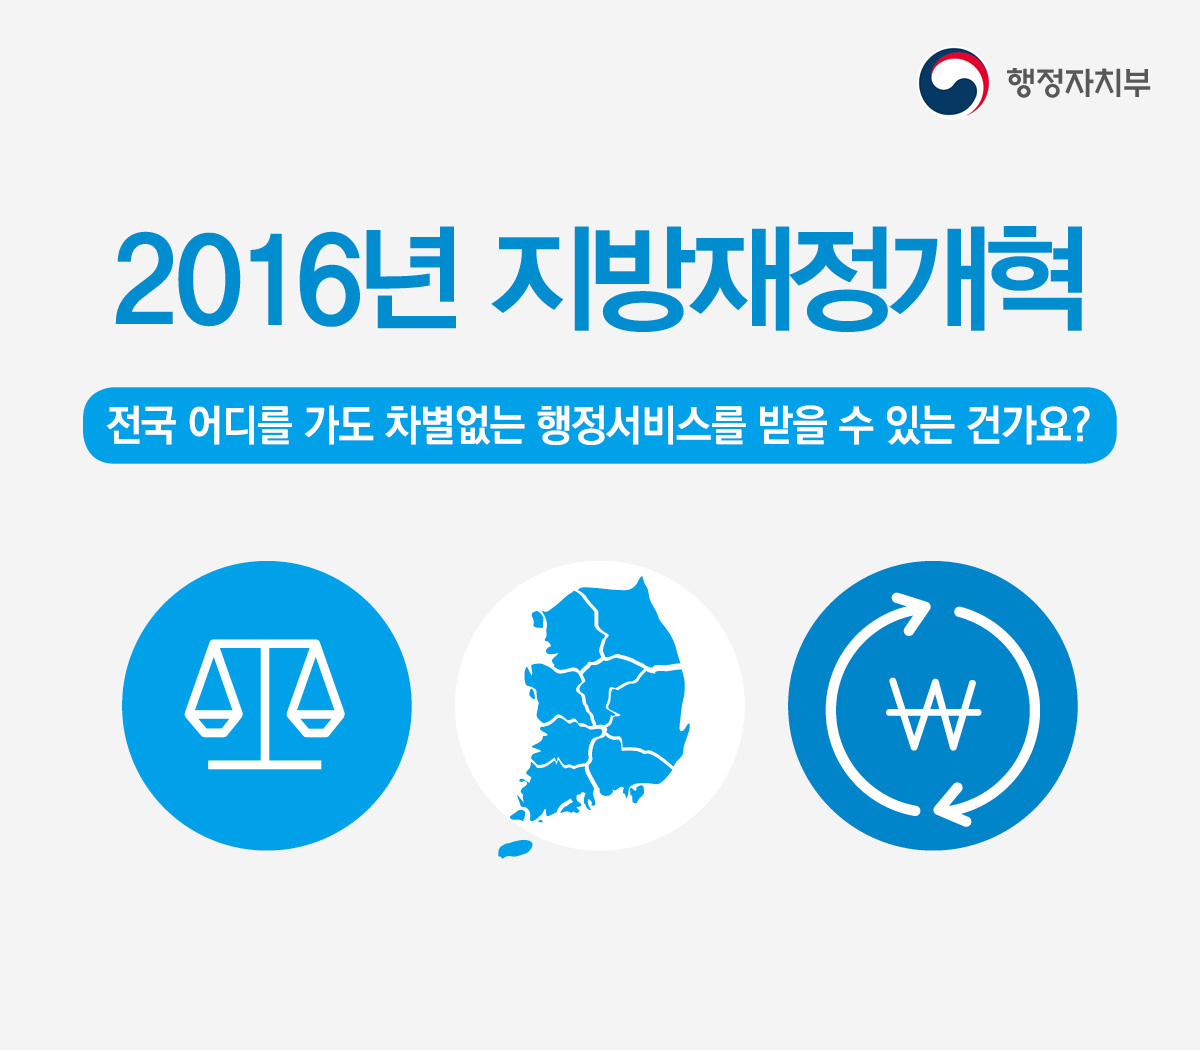 2016년 지방재정개혁 핵심 키워드는?